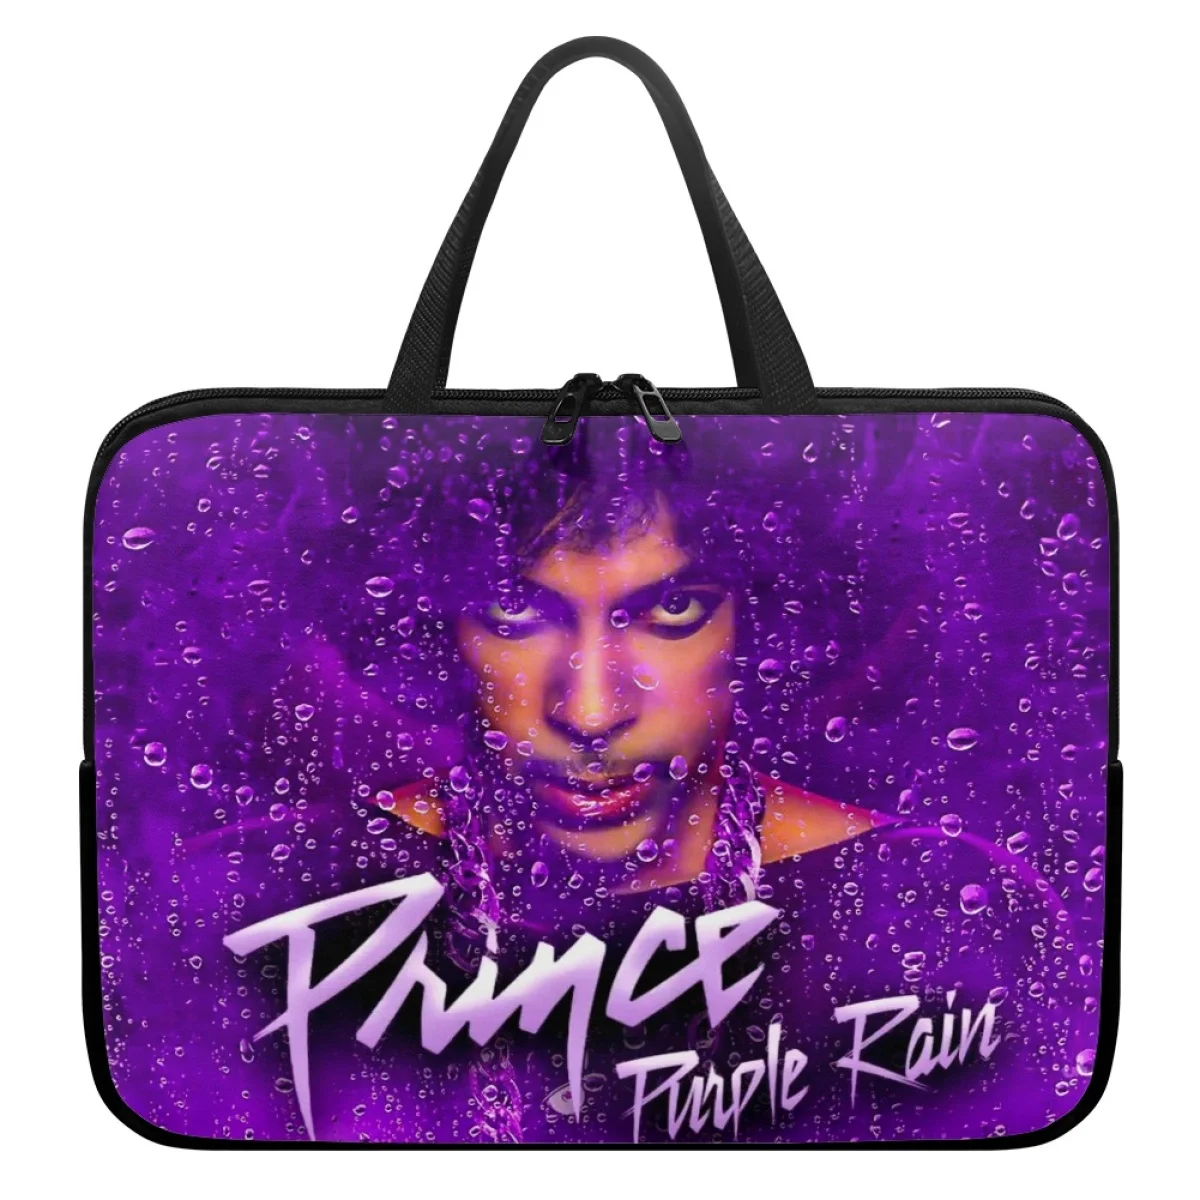 Чехол для ноутбука Prince Purple Rain, противоударный чехол для ноутбука 13, 14, 15, 16, 17 дюймов, для рок-музыки, для мужчин и женщин